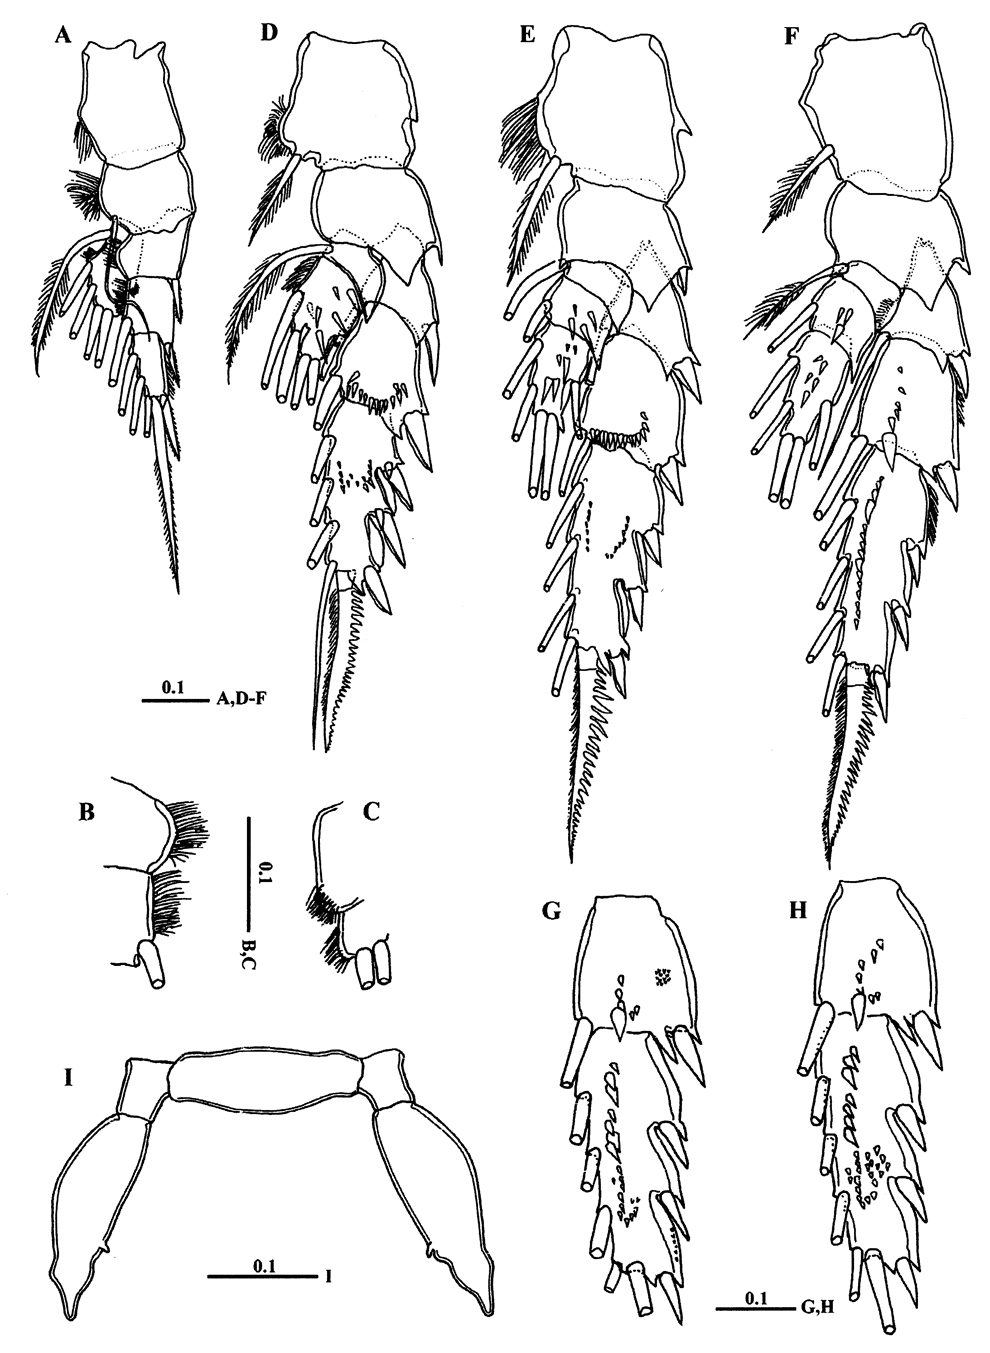 Espèce Macandrewella cochinensis - Planche 3 de figures morphologiques